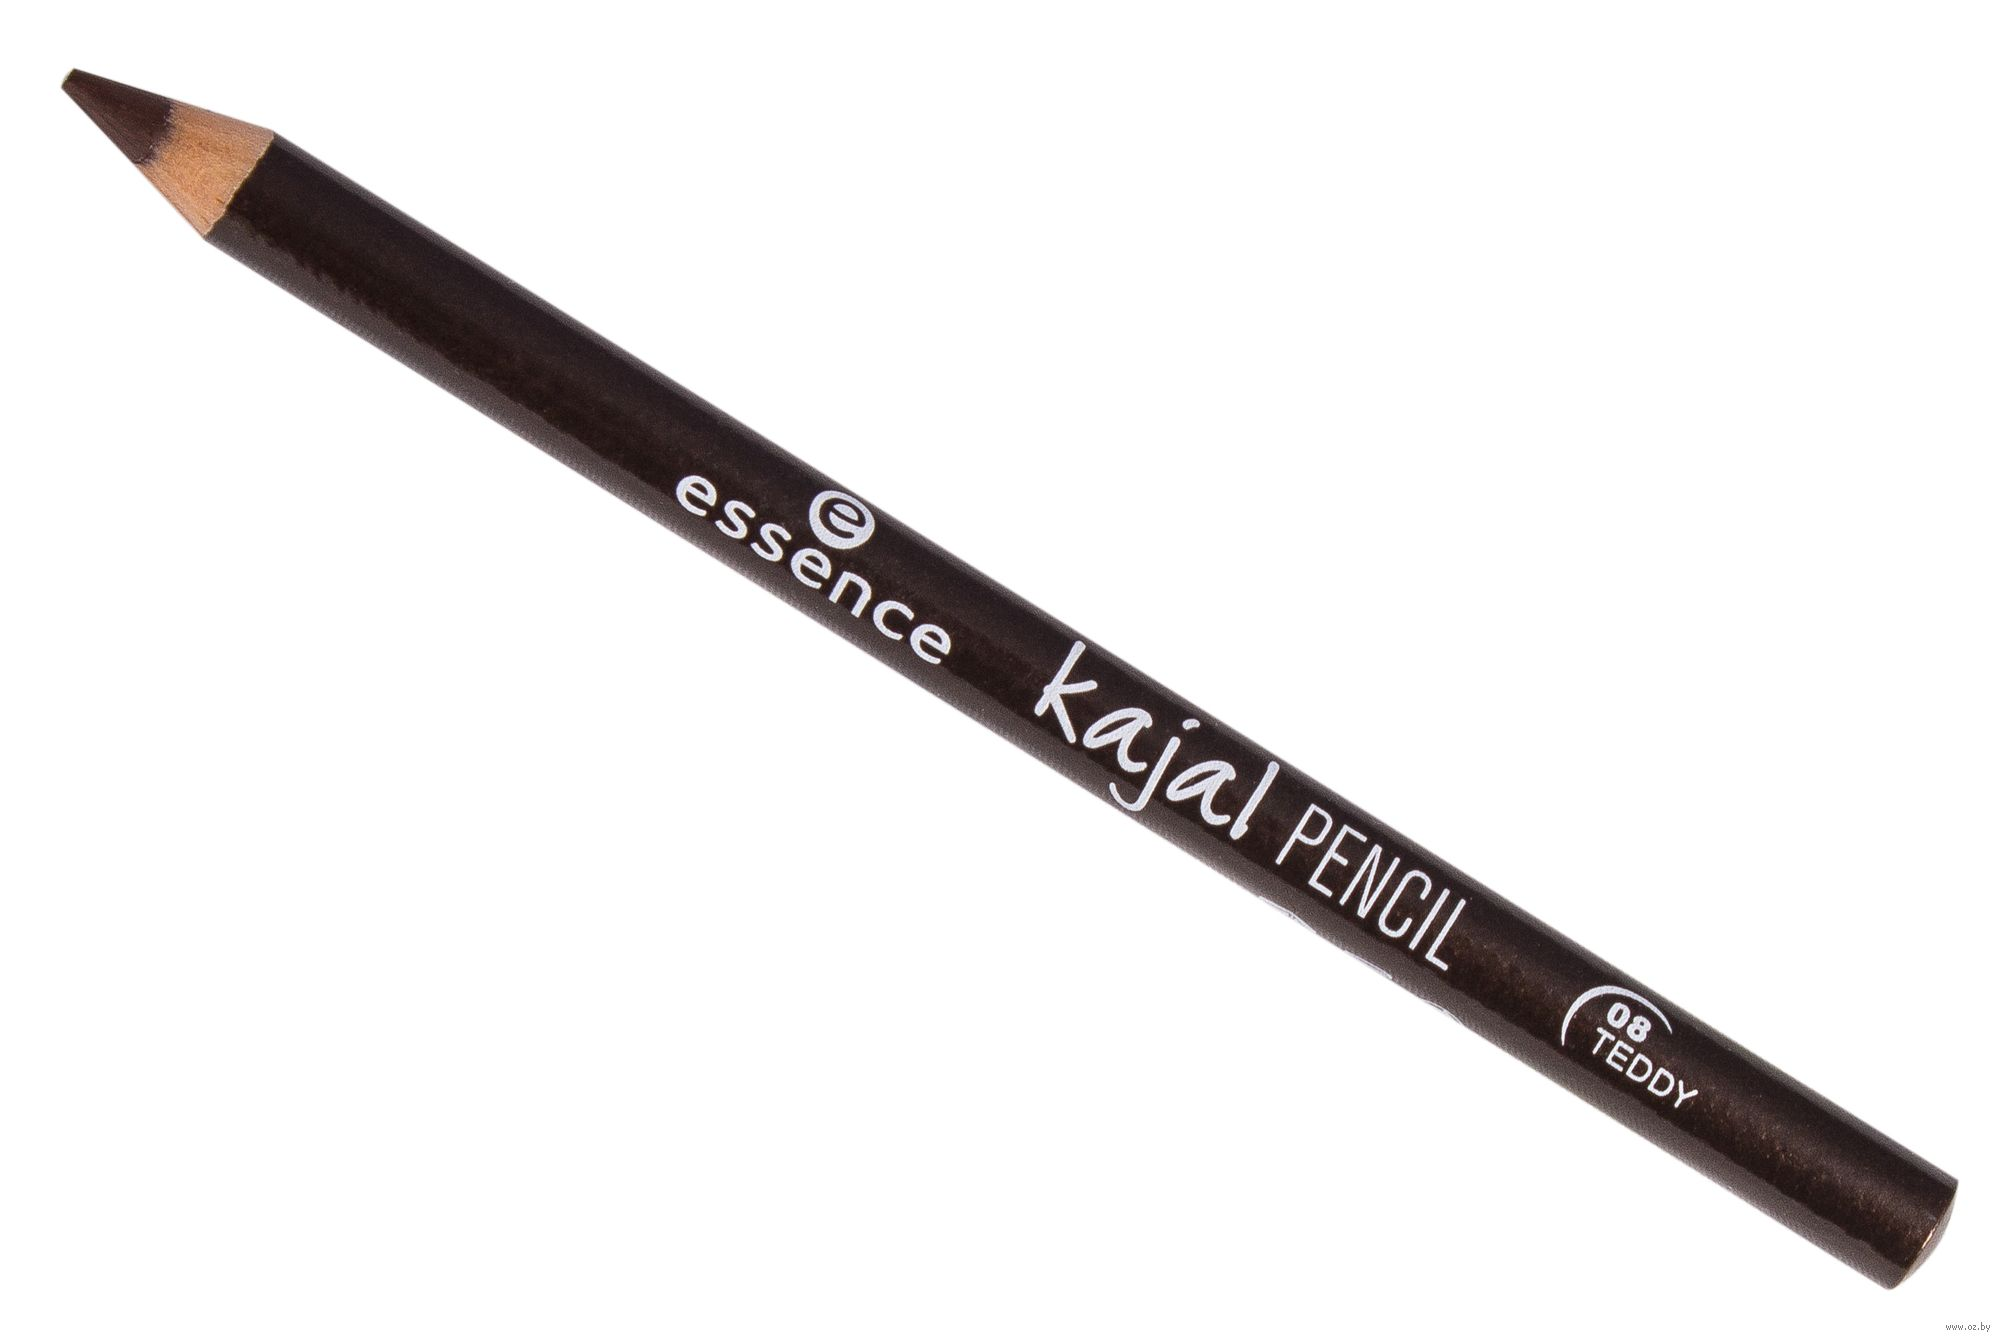 Kajal eyeliner. Карандаш Essence Kajal Pencil. Essence Kajal Pencil 08. Карандаш для век Essence Kajal Eye Pencil т.30 1 г. Essence карандаш д/глаз Kajal 01.